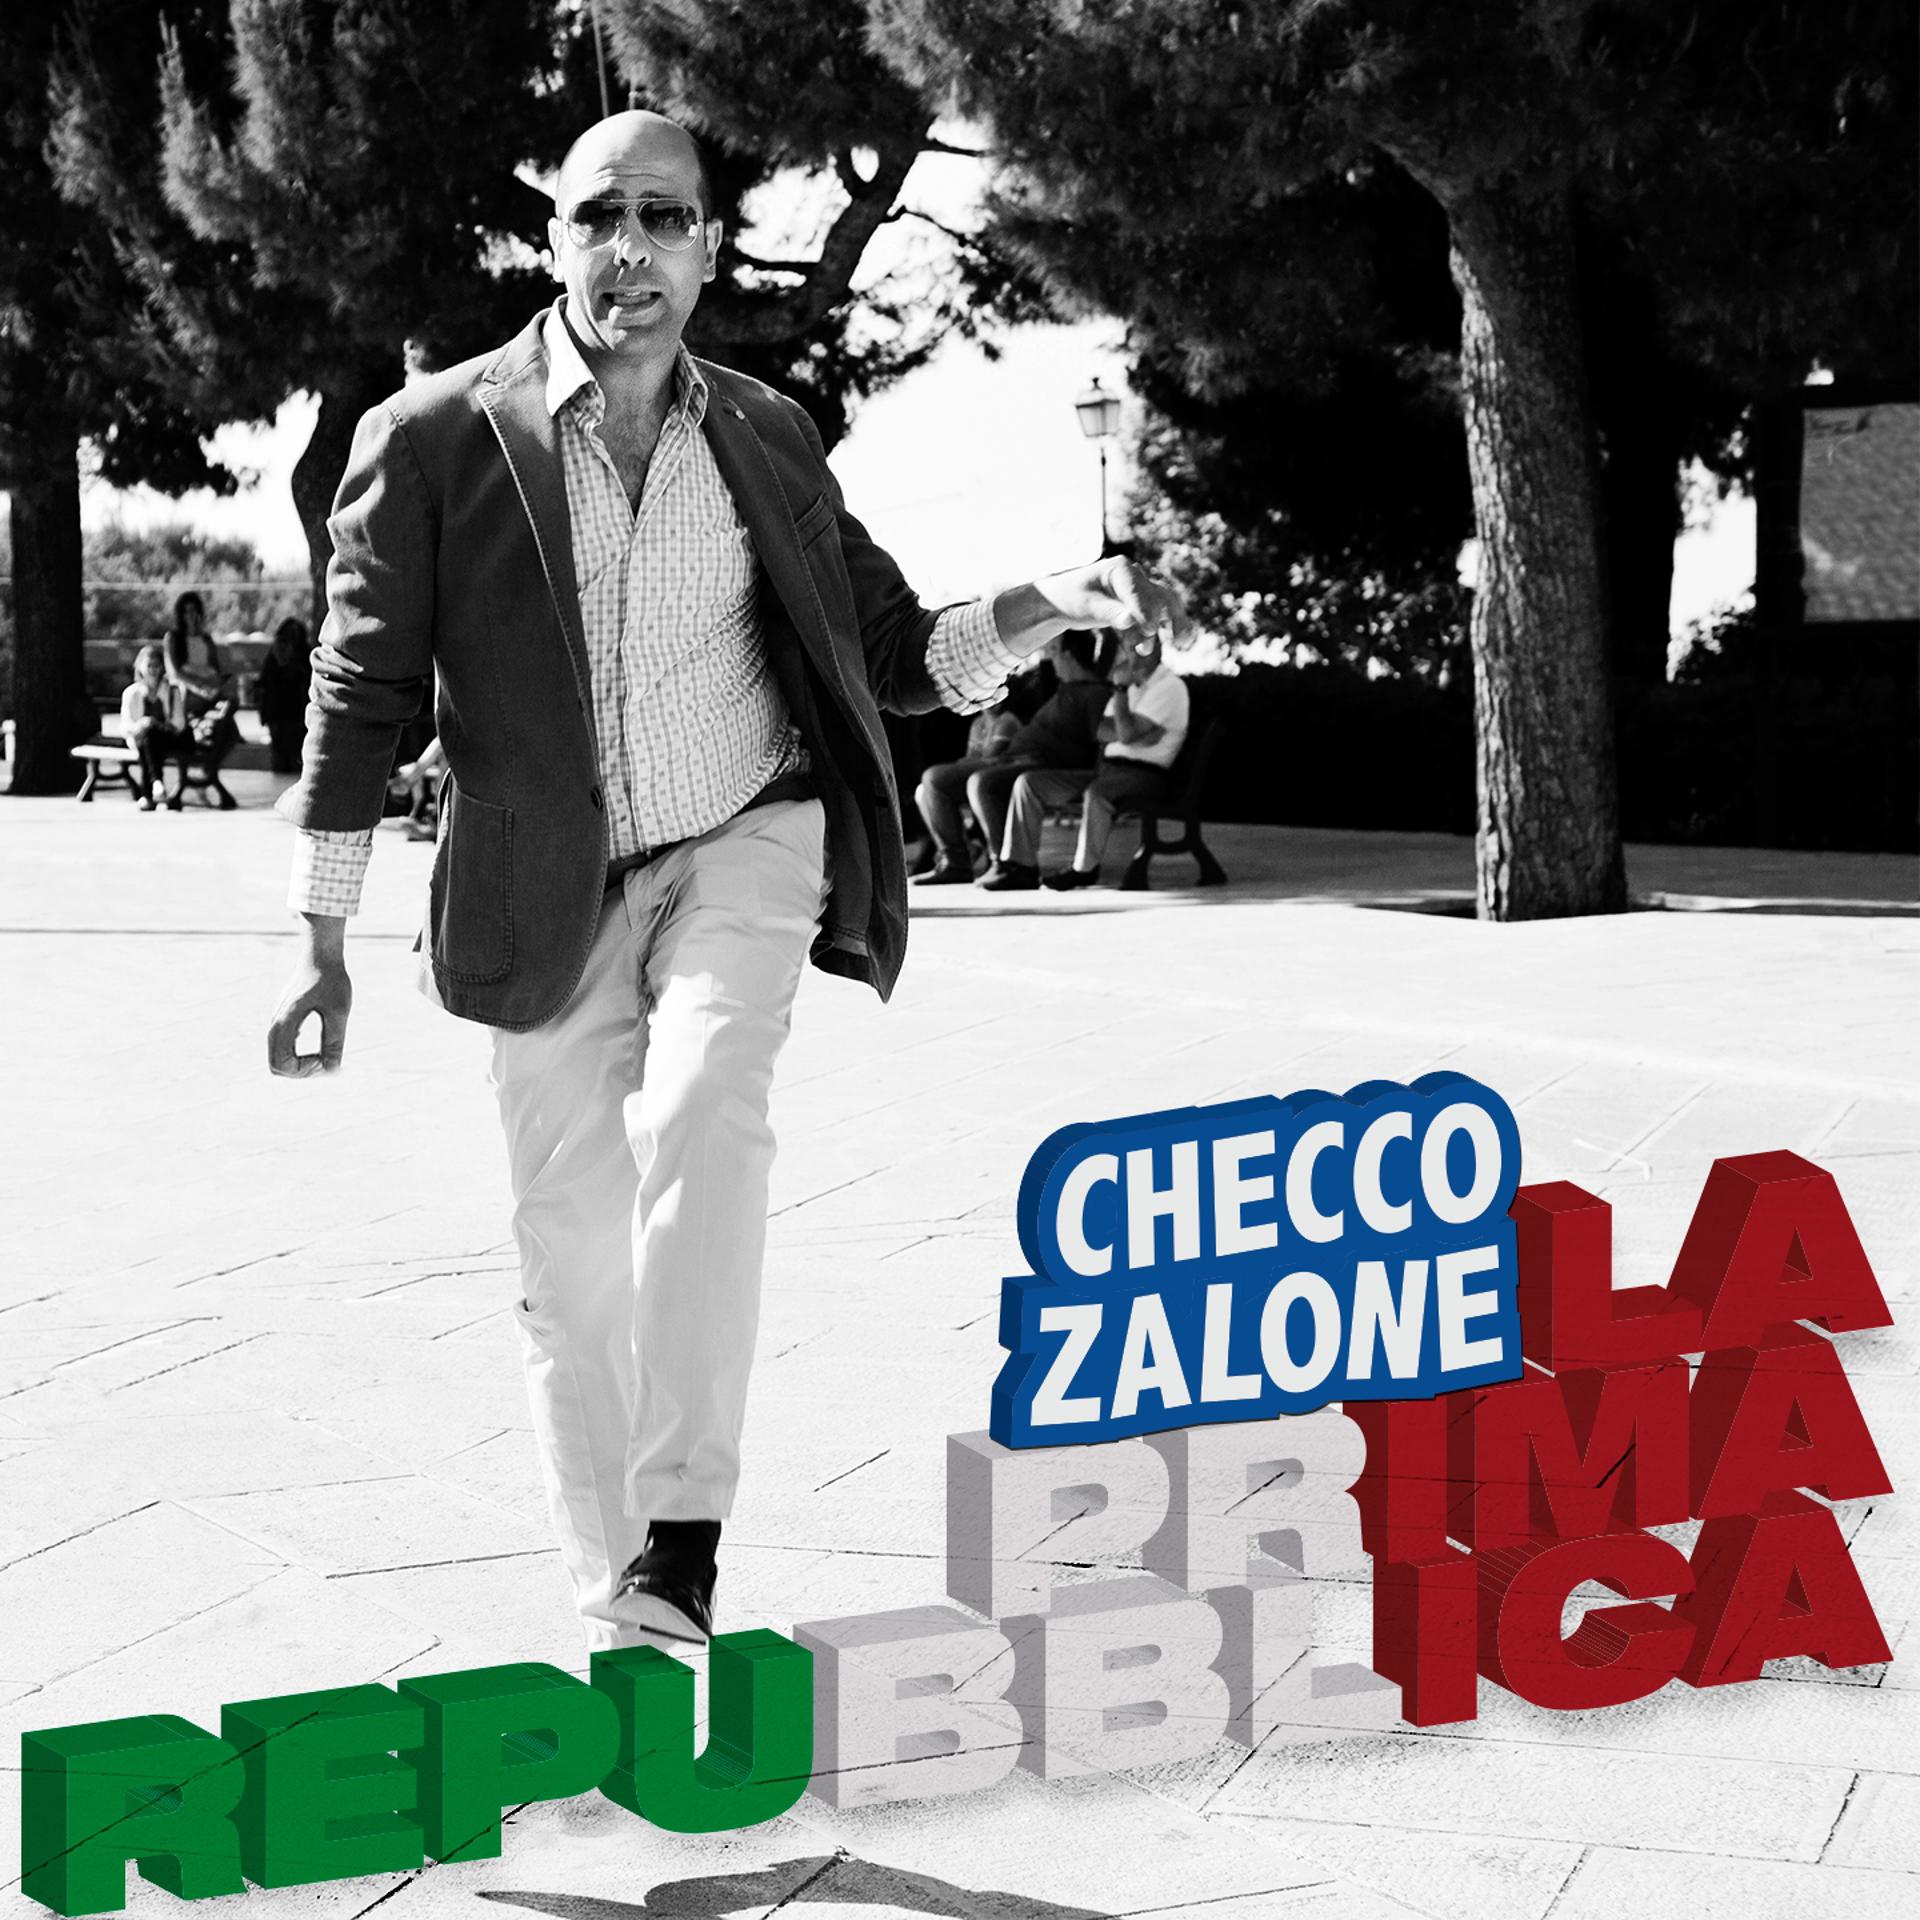 Постер альбома La prima Repubblica